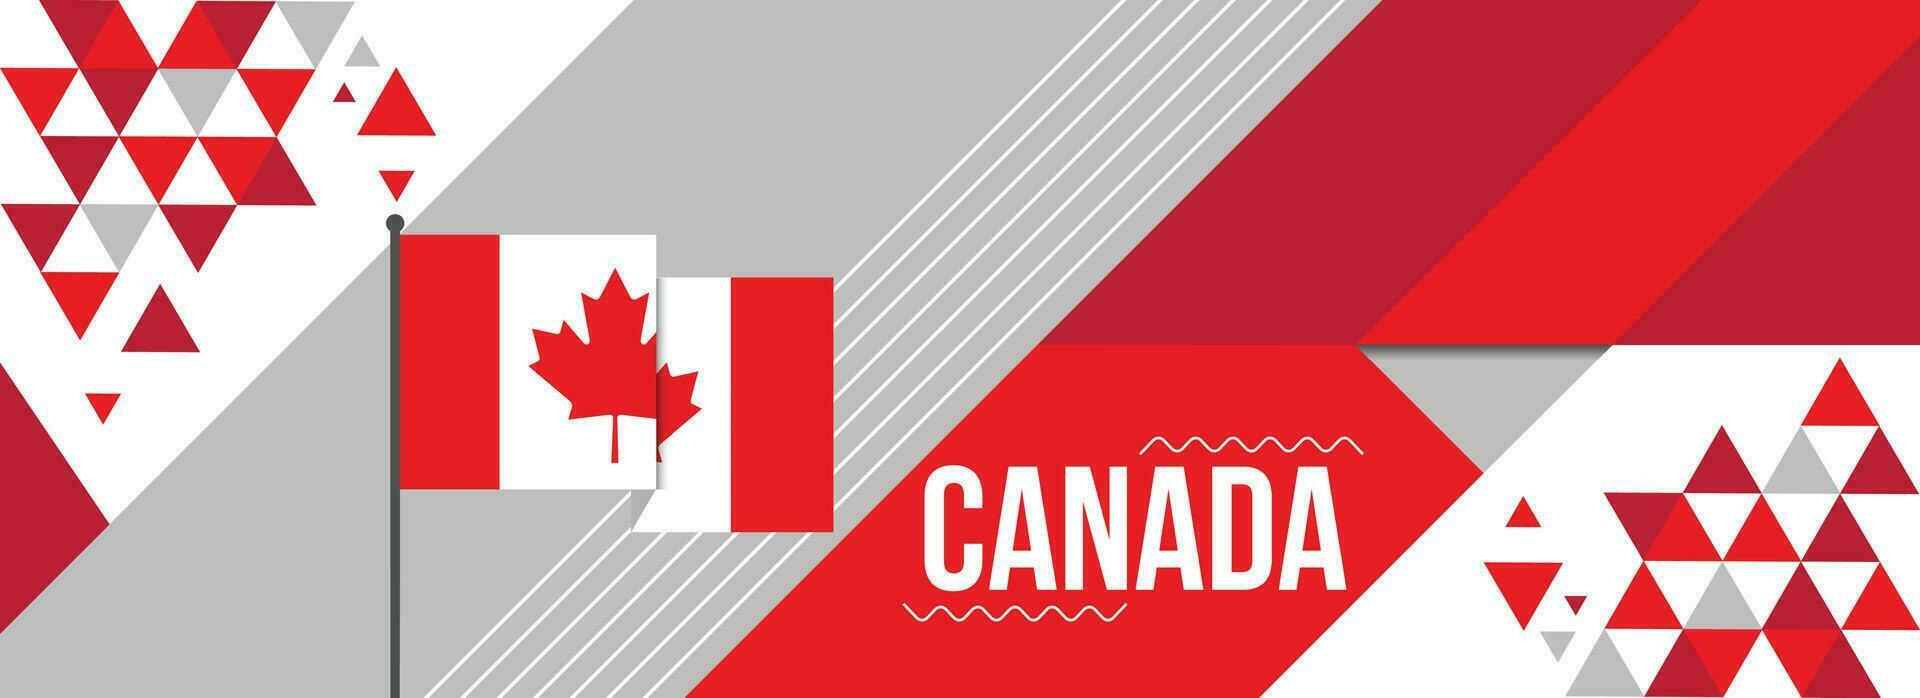 Kanada National oder Unabhängigkeit Tag Banner Design zum Land Feier. Flagge von Kanadier modern retro Design abstrakt geometrisch Symbole. Vektor Illustration